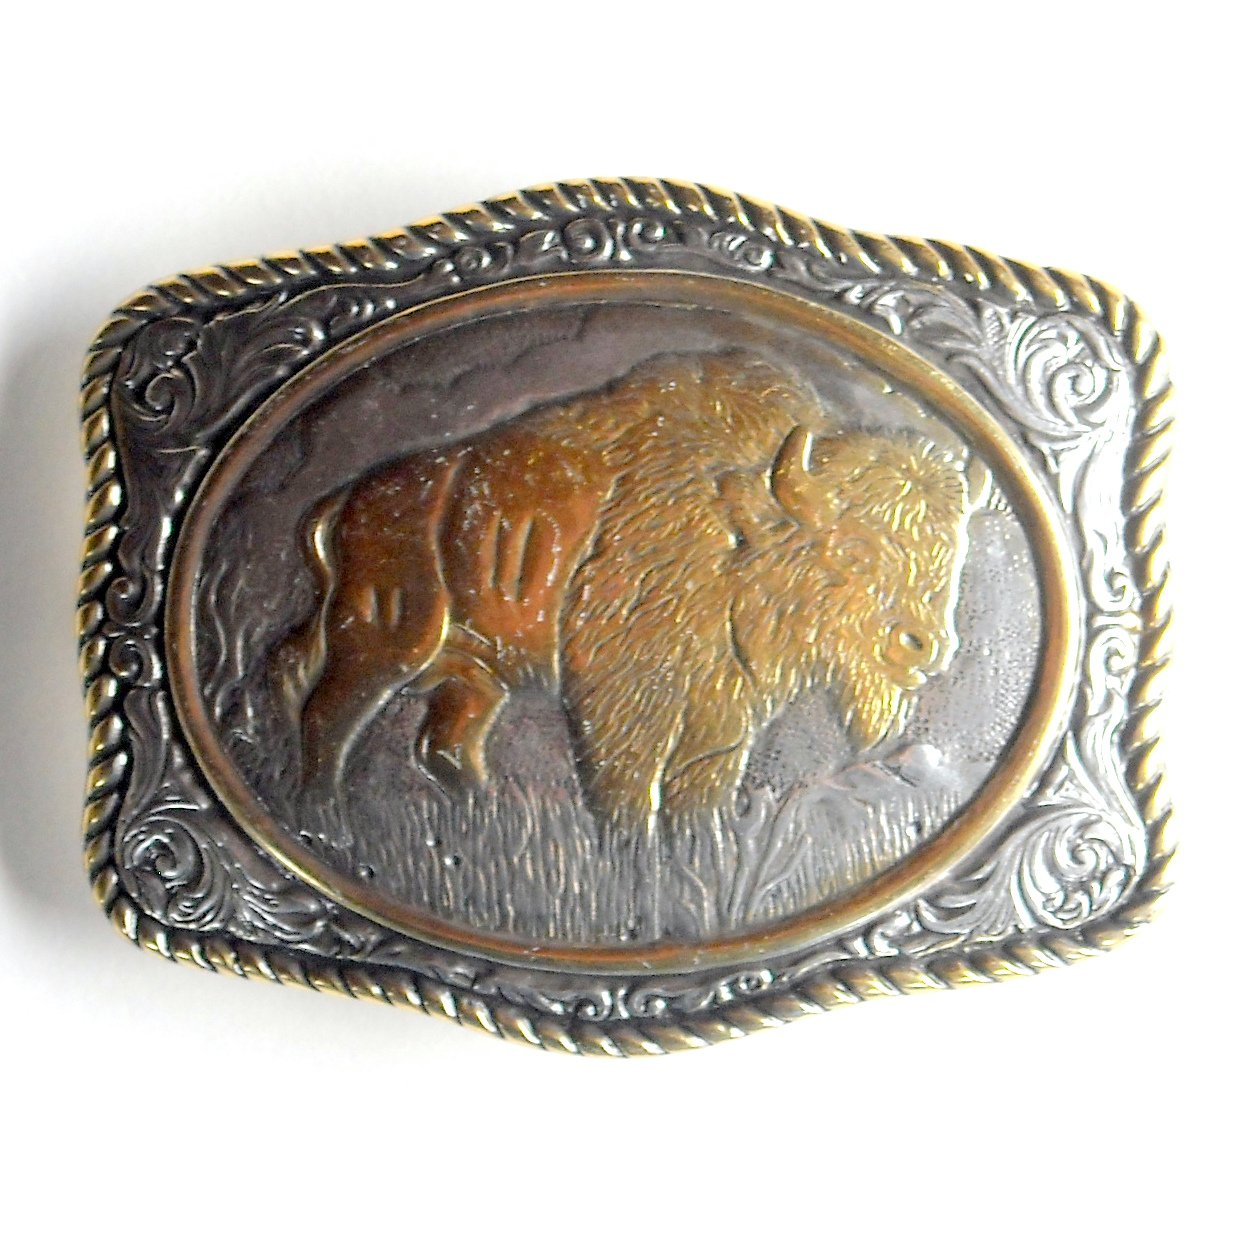 Vintage Bison Silver and Gold color metal alloy belt buckle